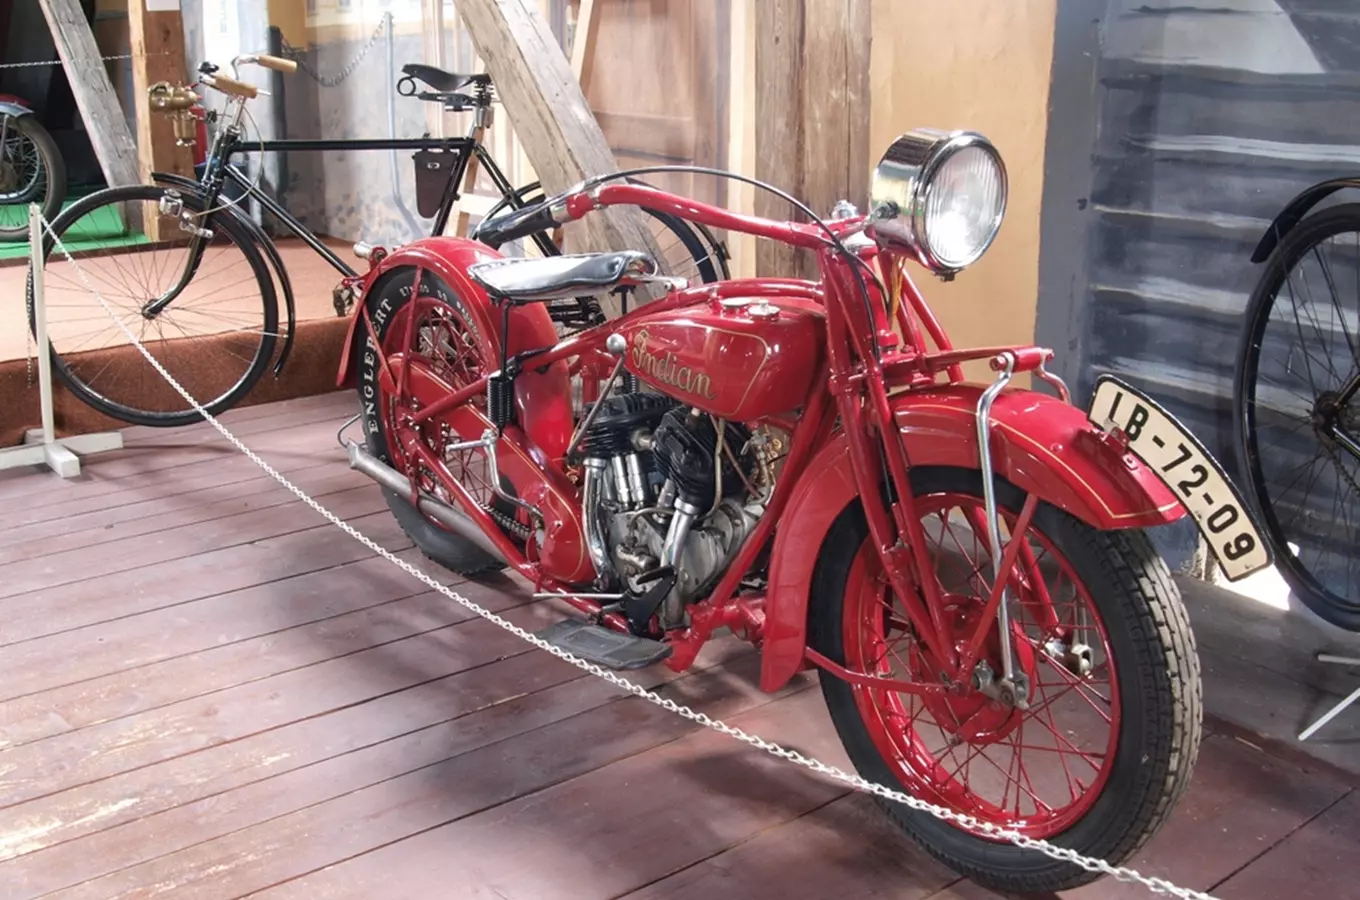 Muzeum historických motocyklů v Kašperských Horách